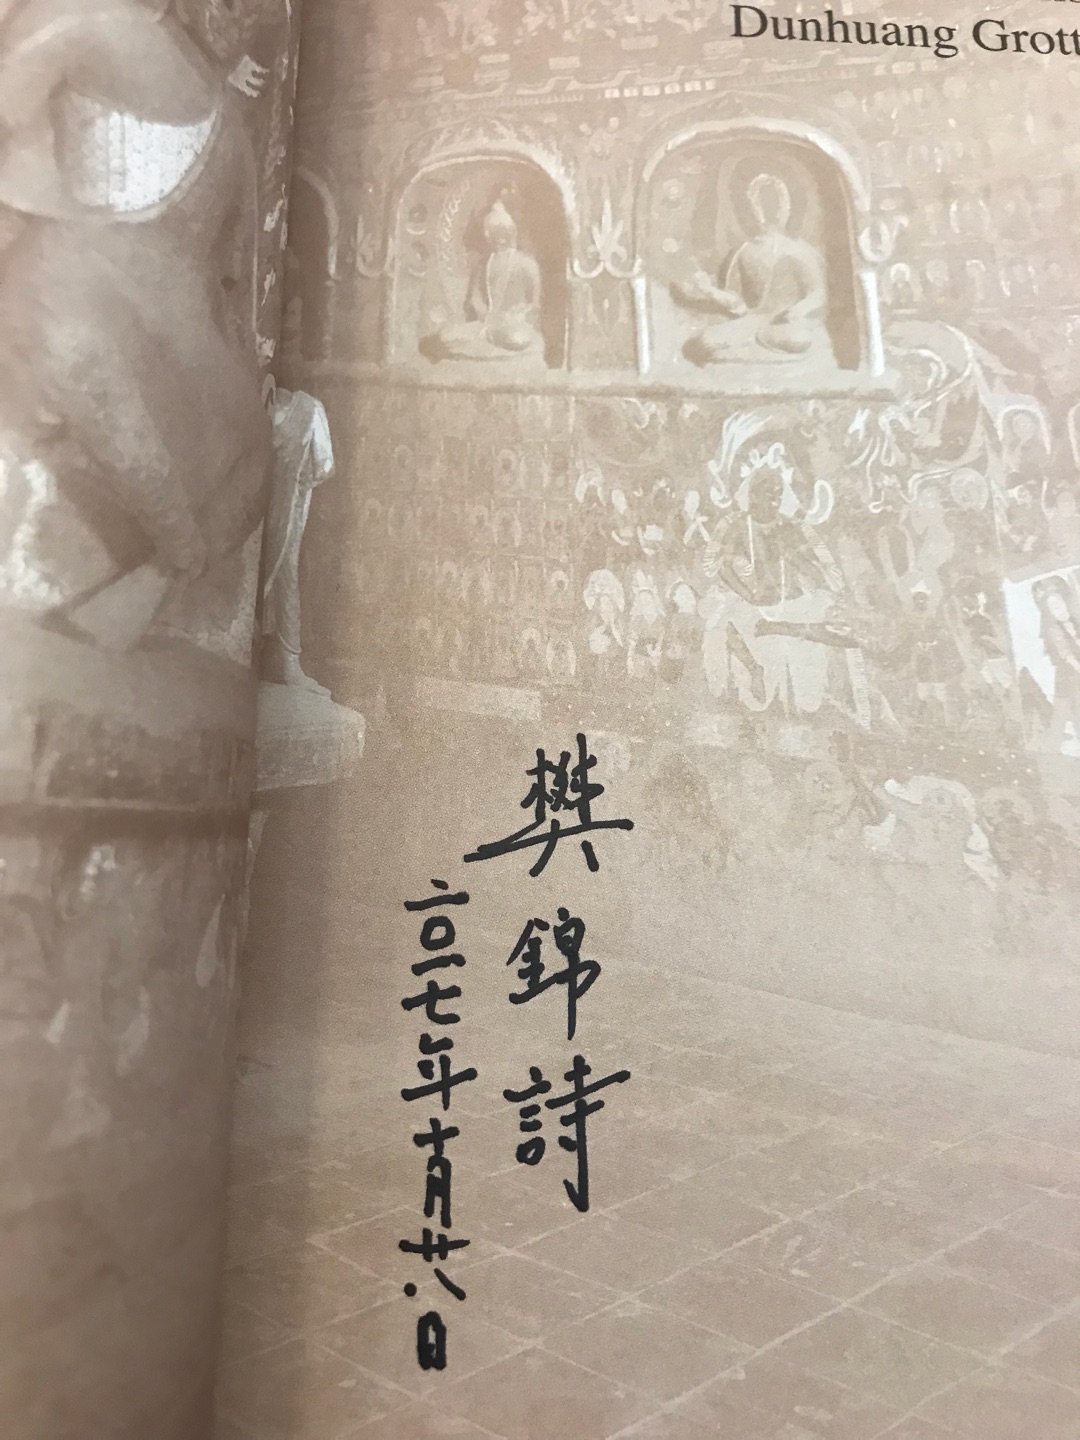 有了樊锦诗老师的签名，更具收藏价值了，无限迷人的莫高窟